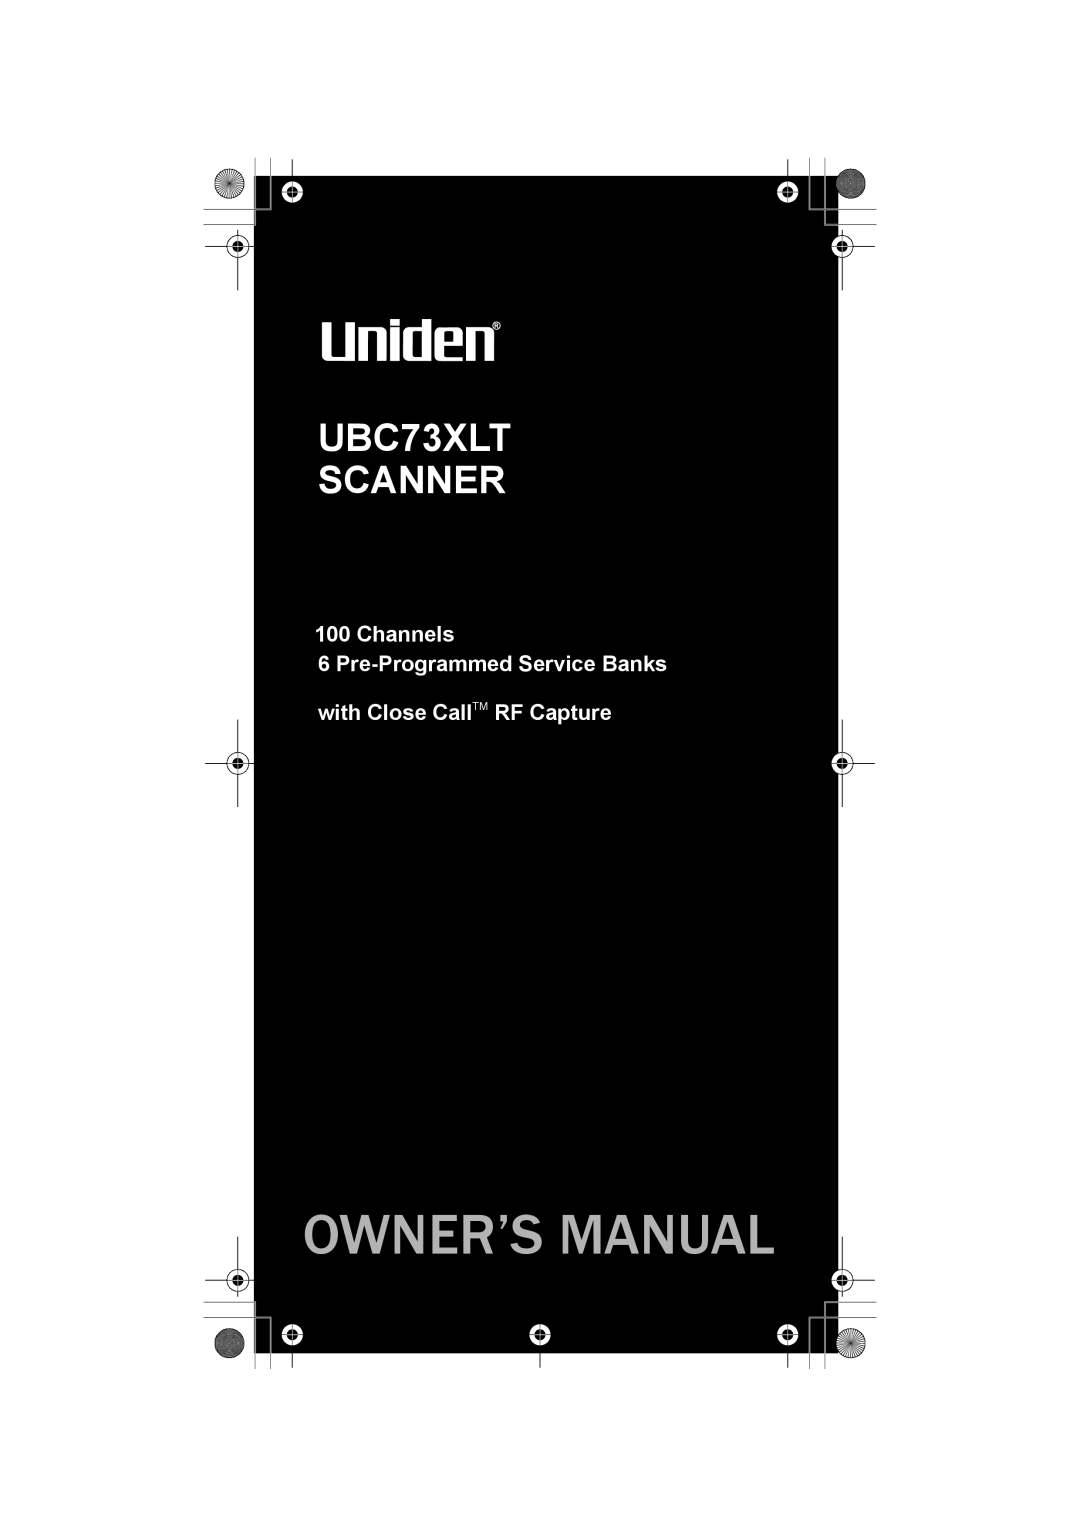 Uniden owner manual Owner’S Manual, UBC73XLT SCANNER, Channels 6 Pre-Programmed Service Banks 